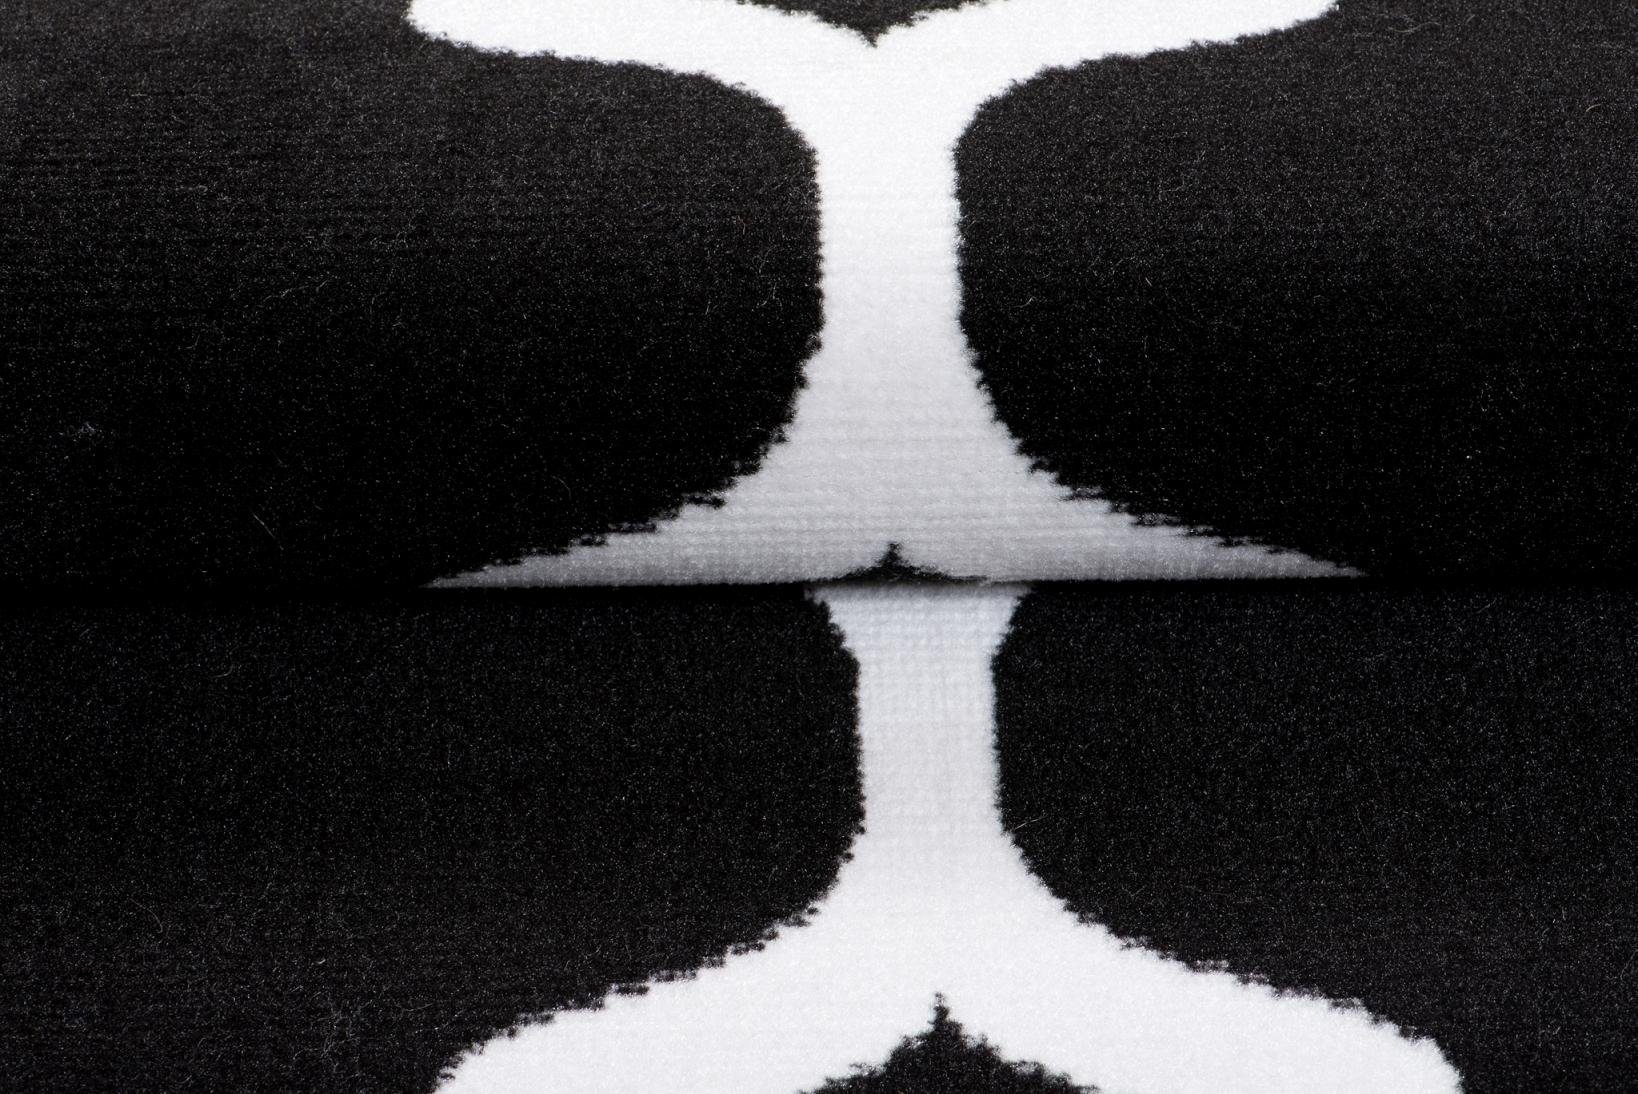 Geometrische x Kurzflor - für Fußbodenheizung, Mazovia, Höhe 70 mm, cm, Teppich Muster schwarz weiß Kurzflor, 140 Modern Geeignet 7 Designteppich